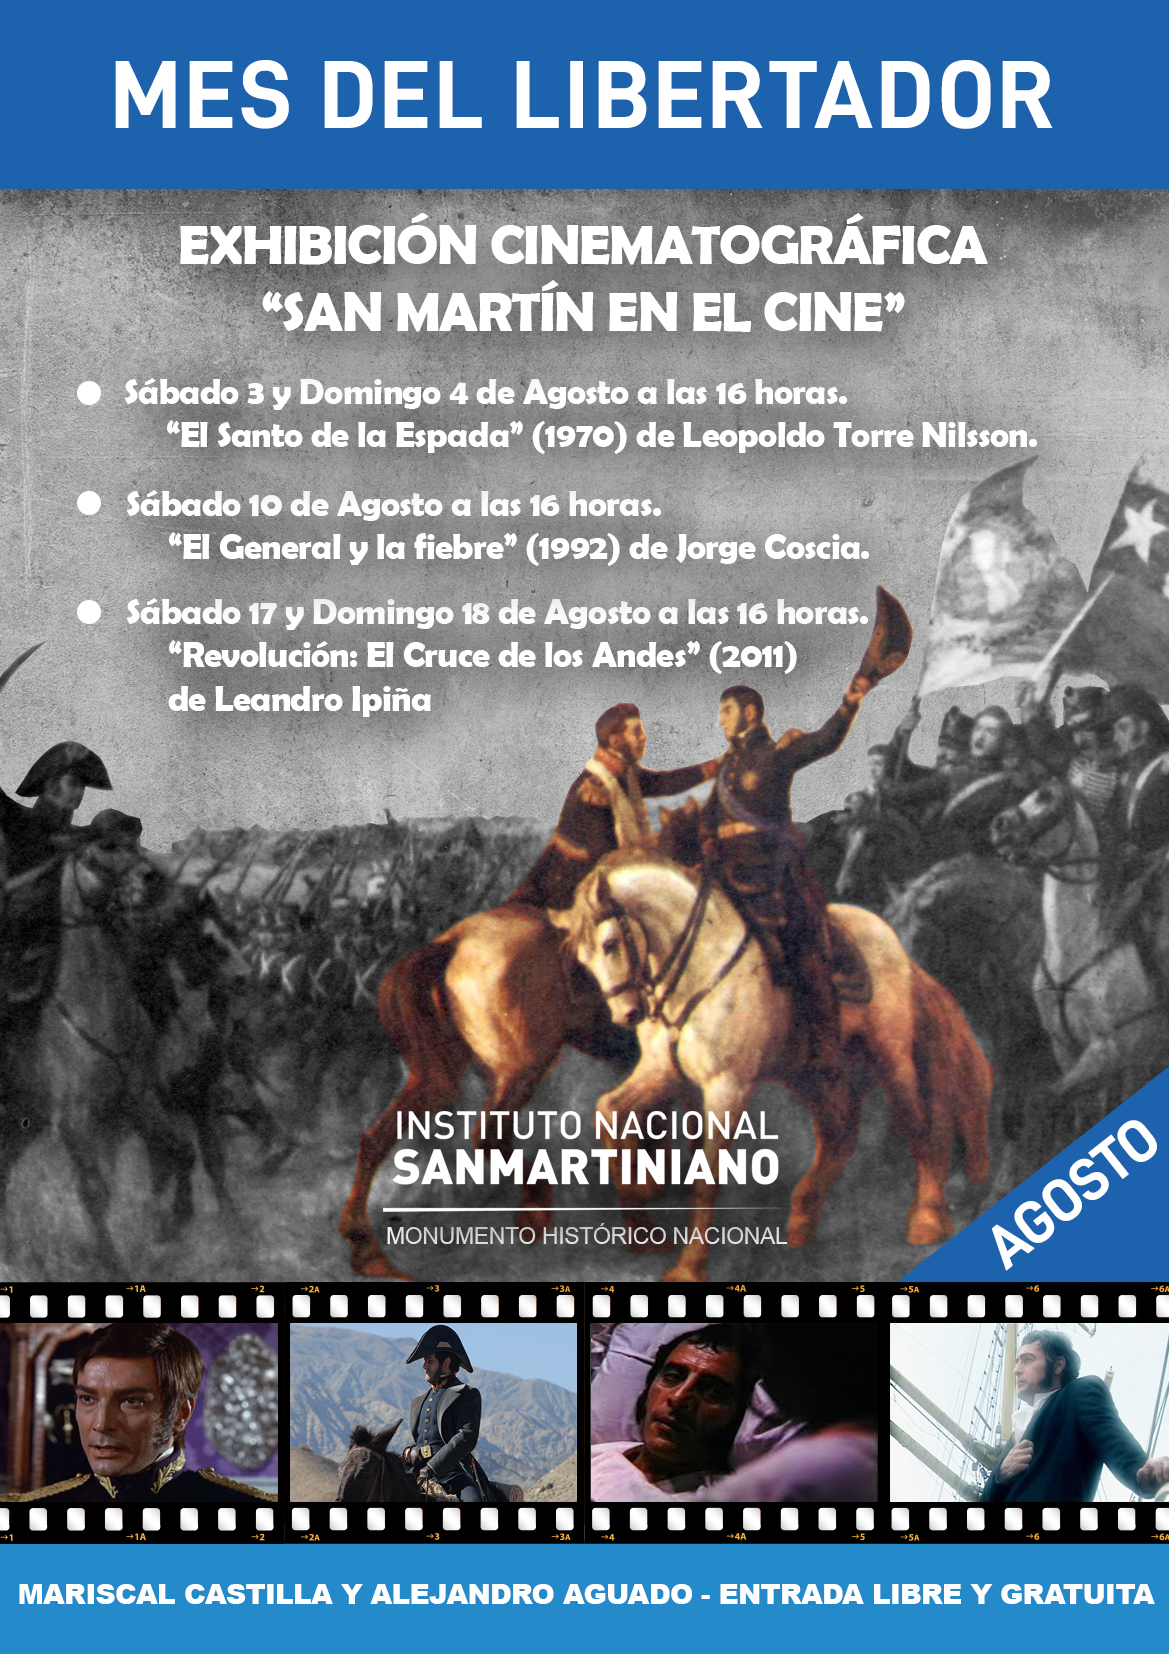 San Martín en el cine